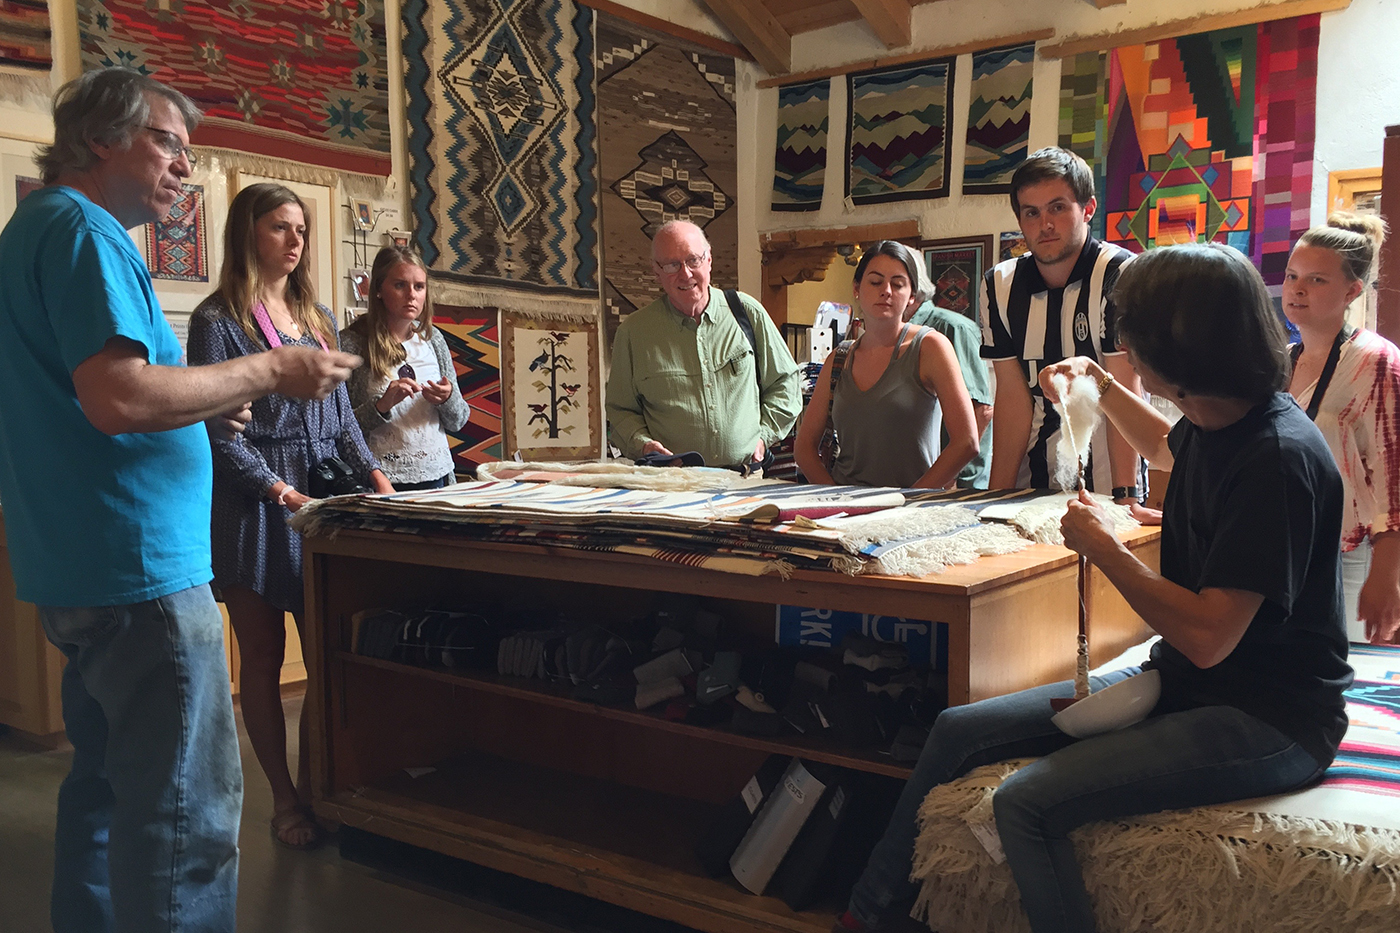 SMU-in-Taos class gathers in a studio